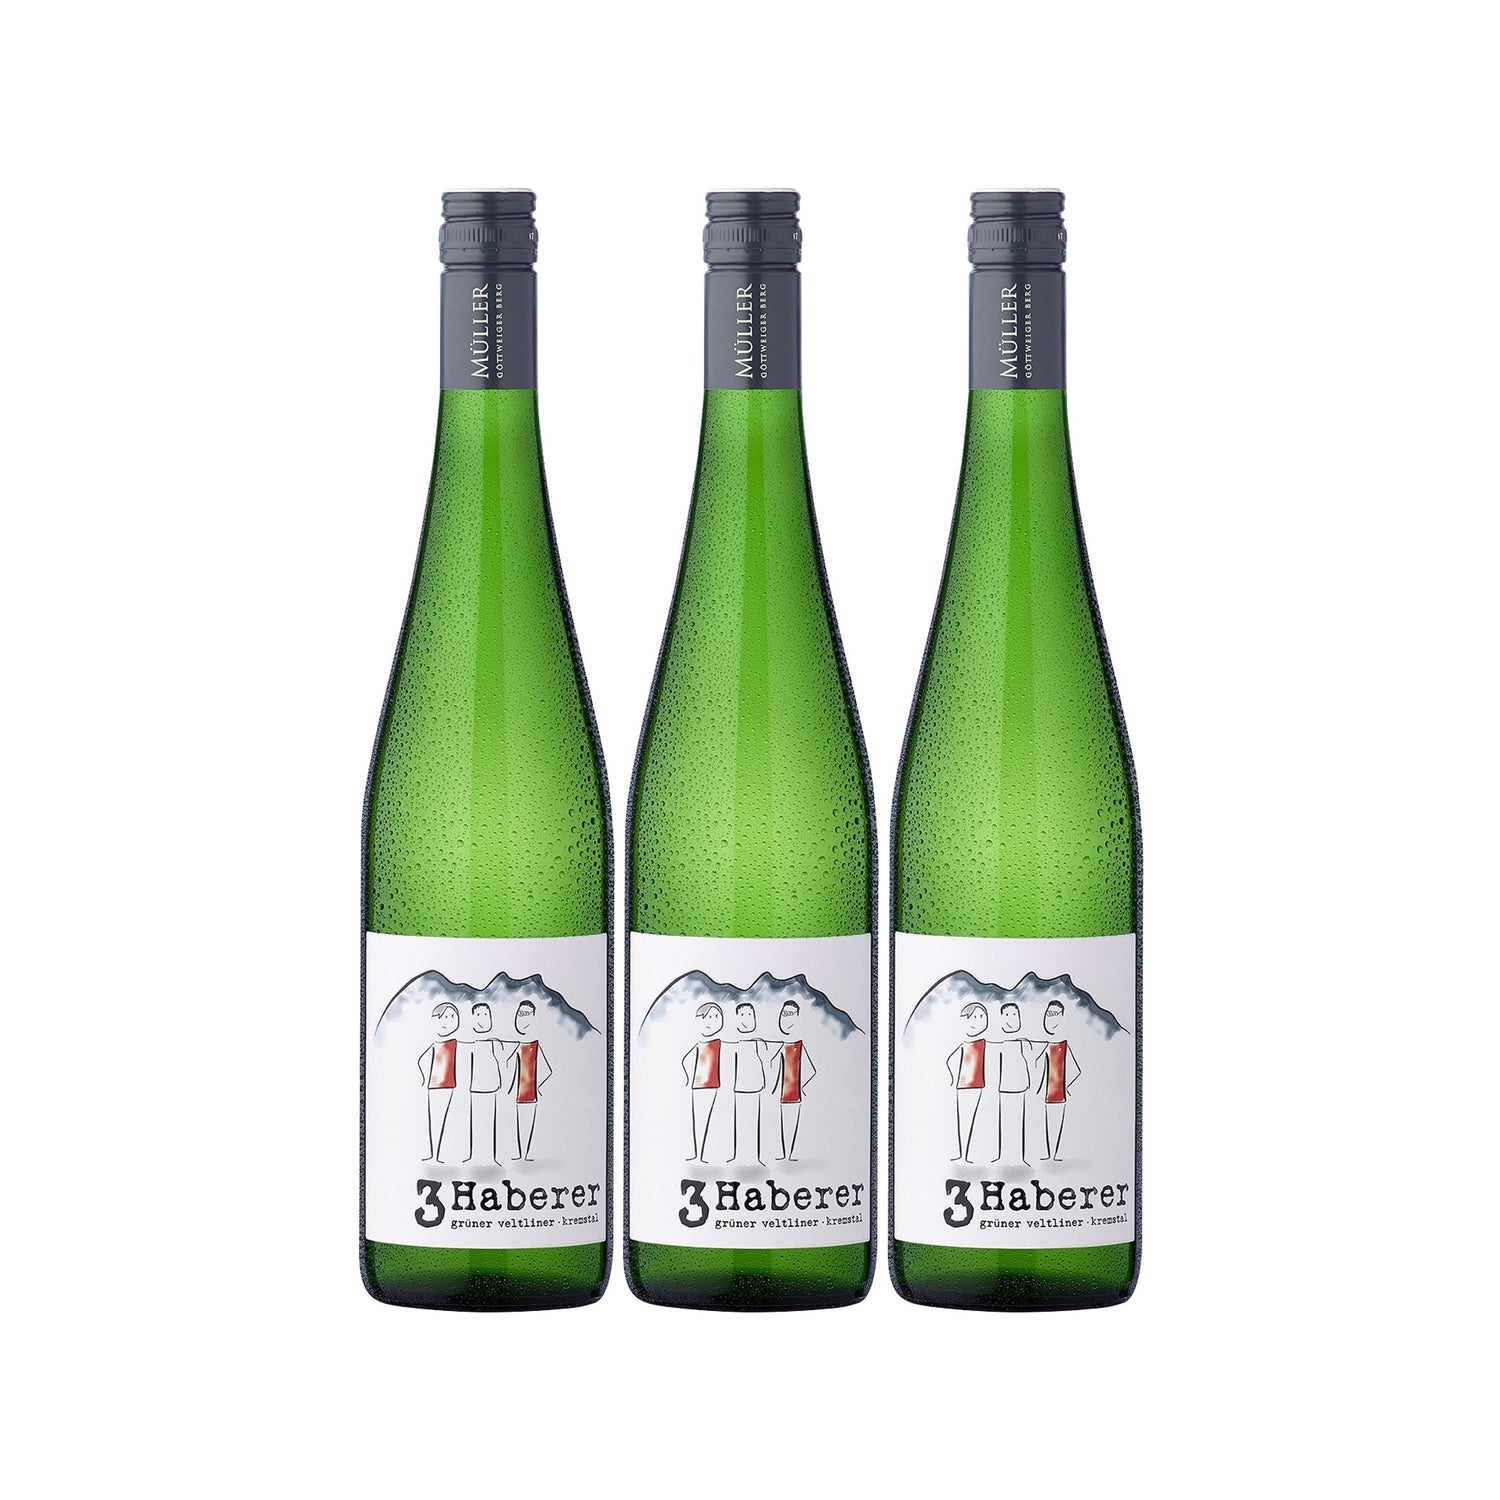 3 Haberer Grüner Veltliner Kremstal DAC Weißwein Wein trocken Österreich (3 x 0.75l) - Versanel - Wein